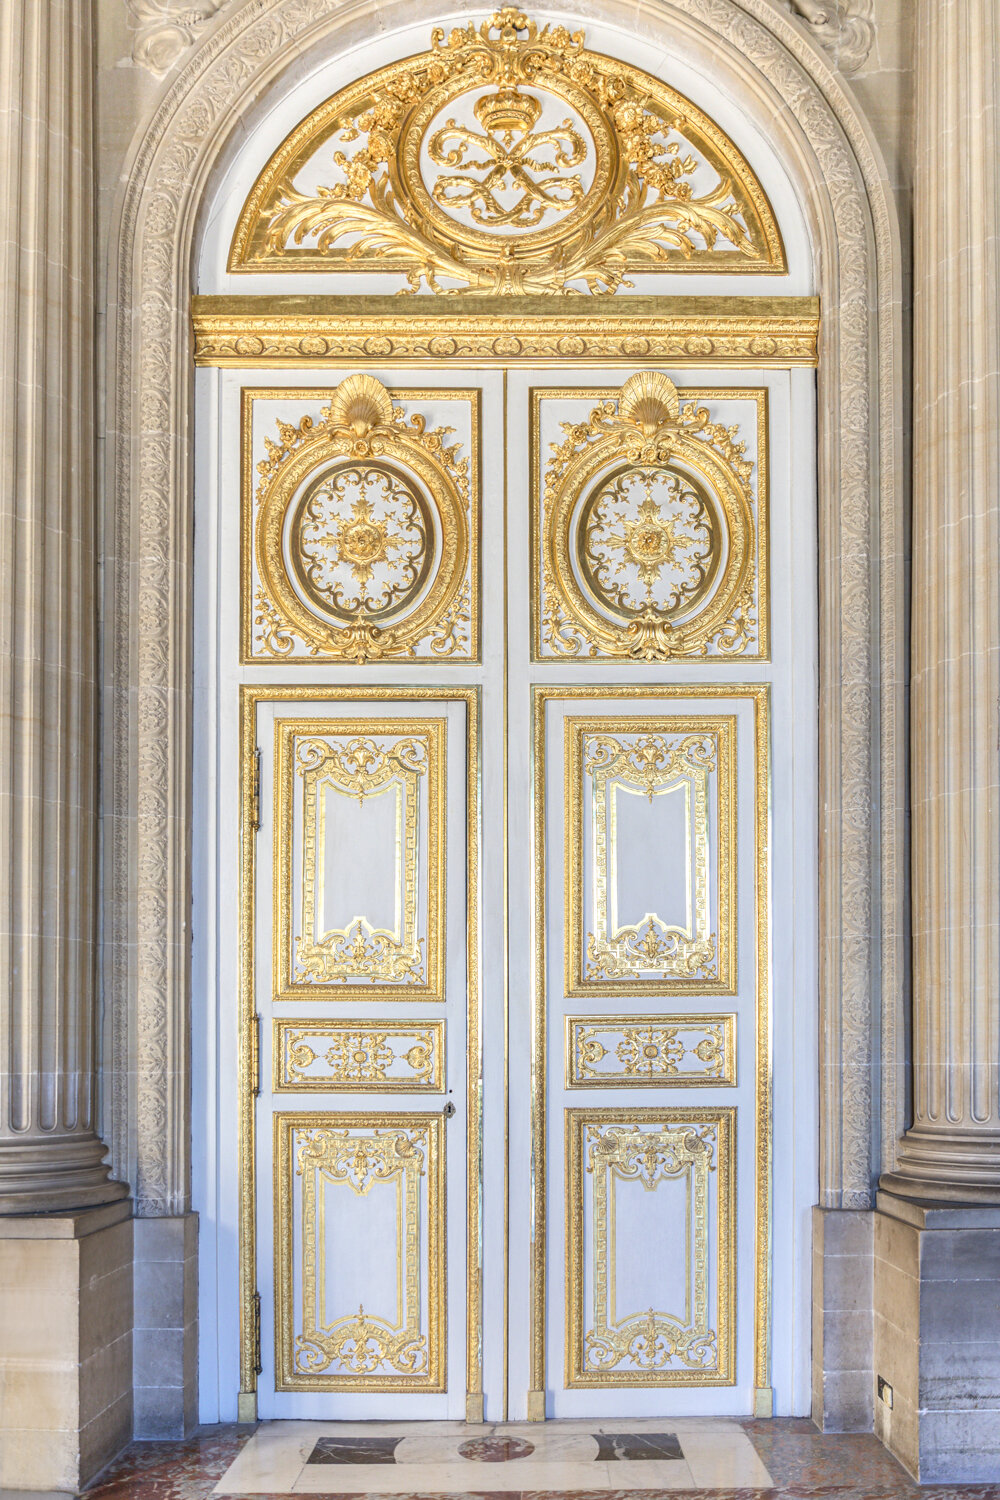 https://parisianmoments.com/versailles/golden-door-versailles